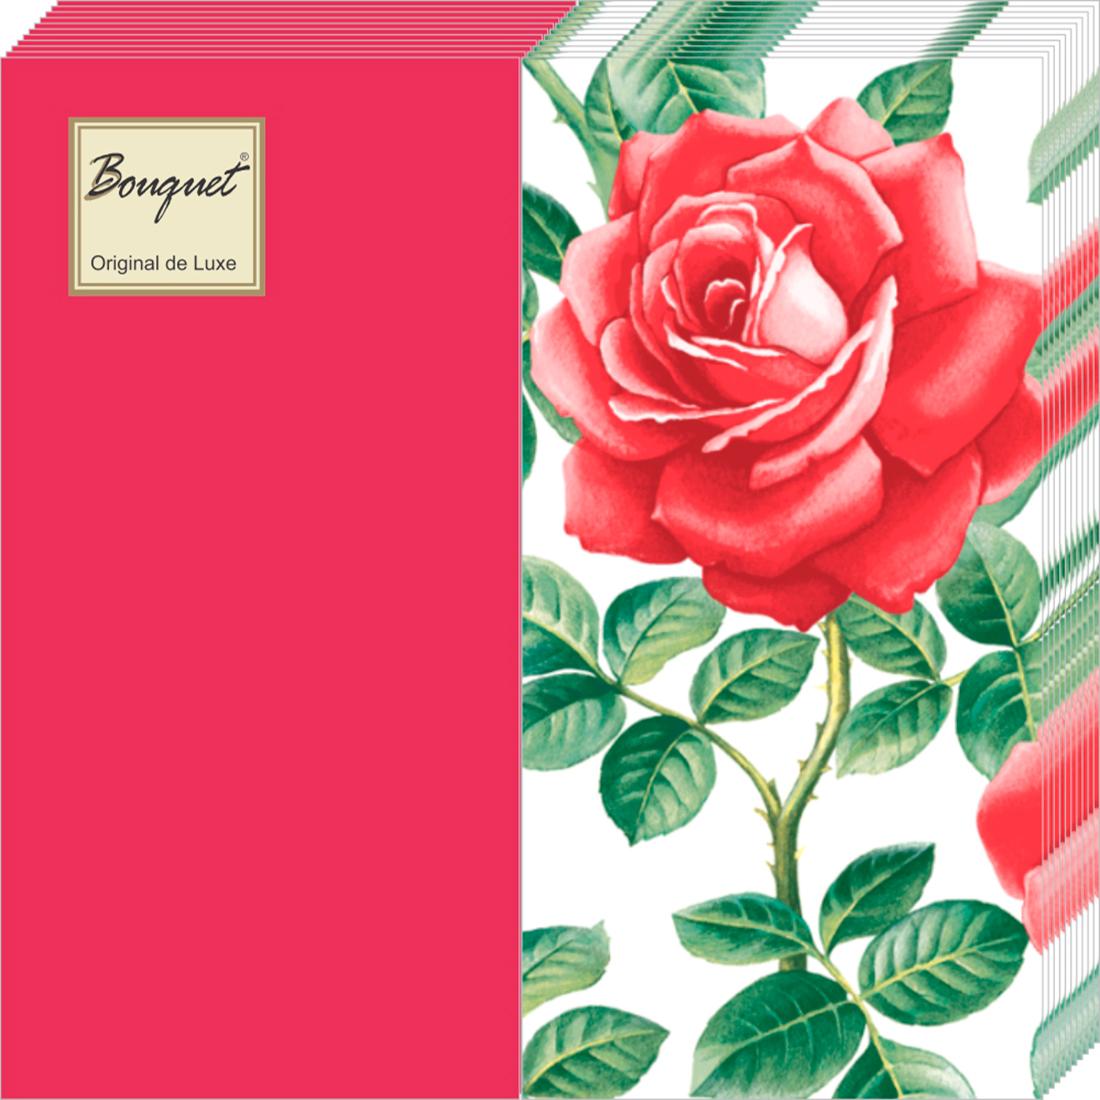 Салфетки Bouquet de luxe бумажные английская роза mix красные 2сл 20л салфетки art bouquet бумажные прекрасная роза 20х20 2сл 30л